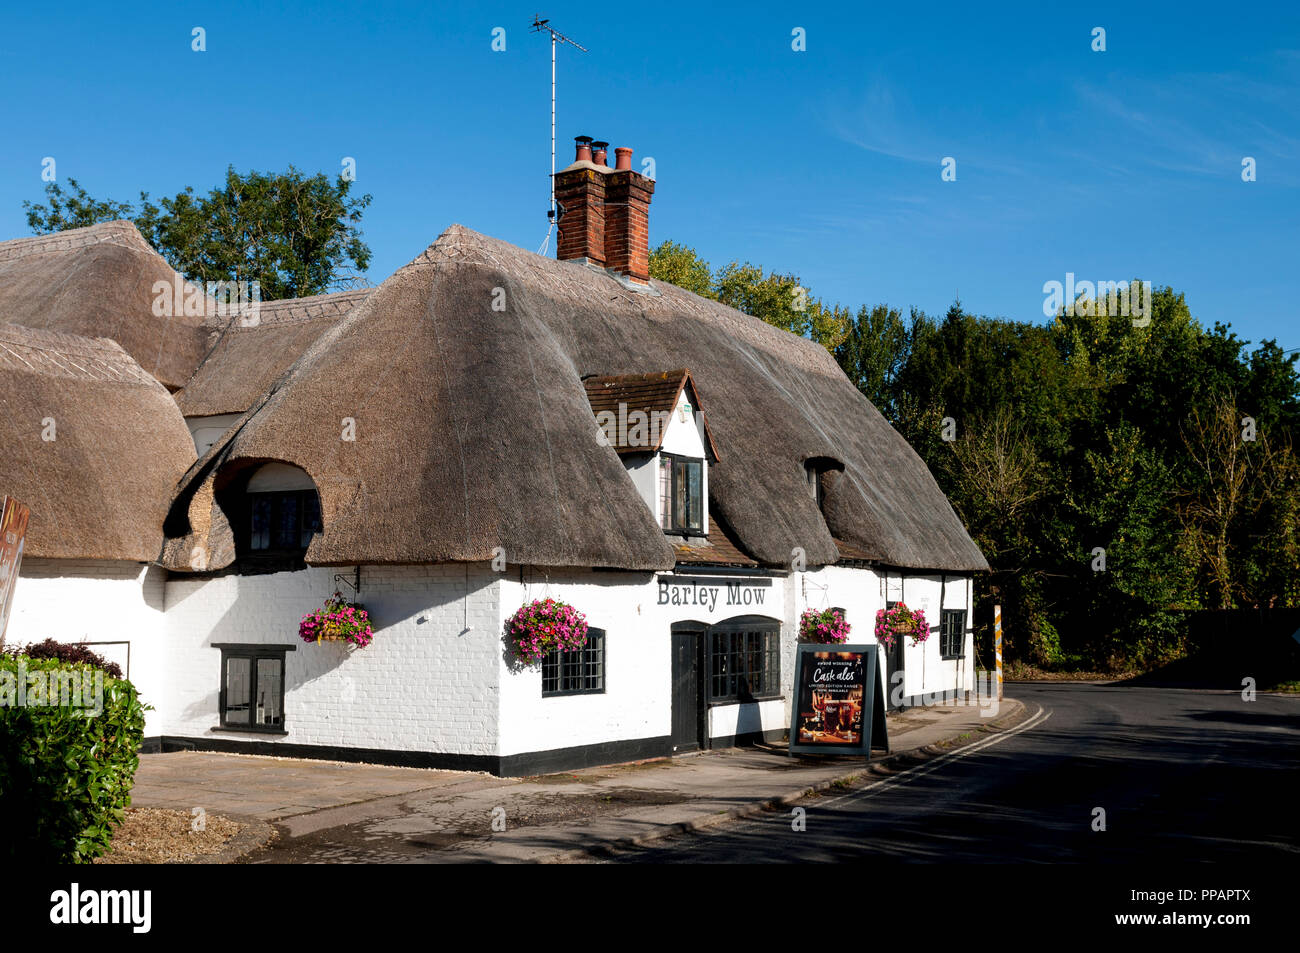 The Barley Mow pub, Clifton Hampden, Oxfordshire, England, UK Stock Photo